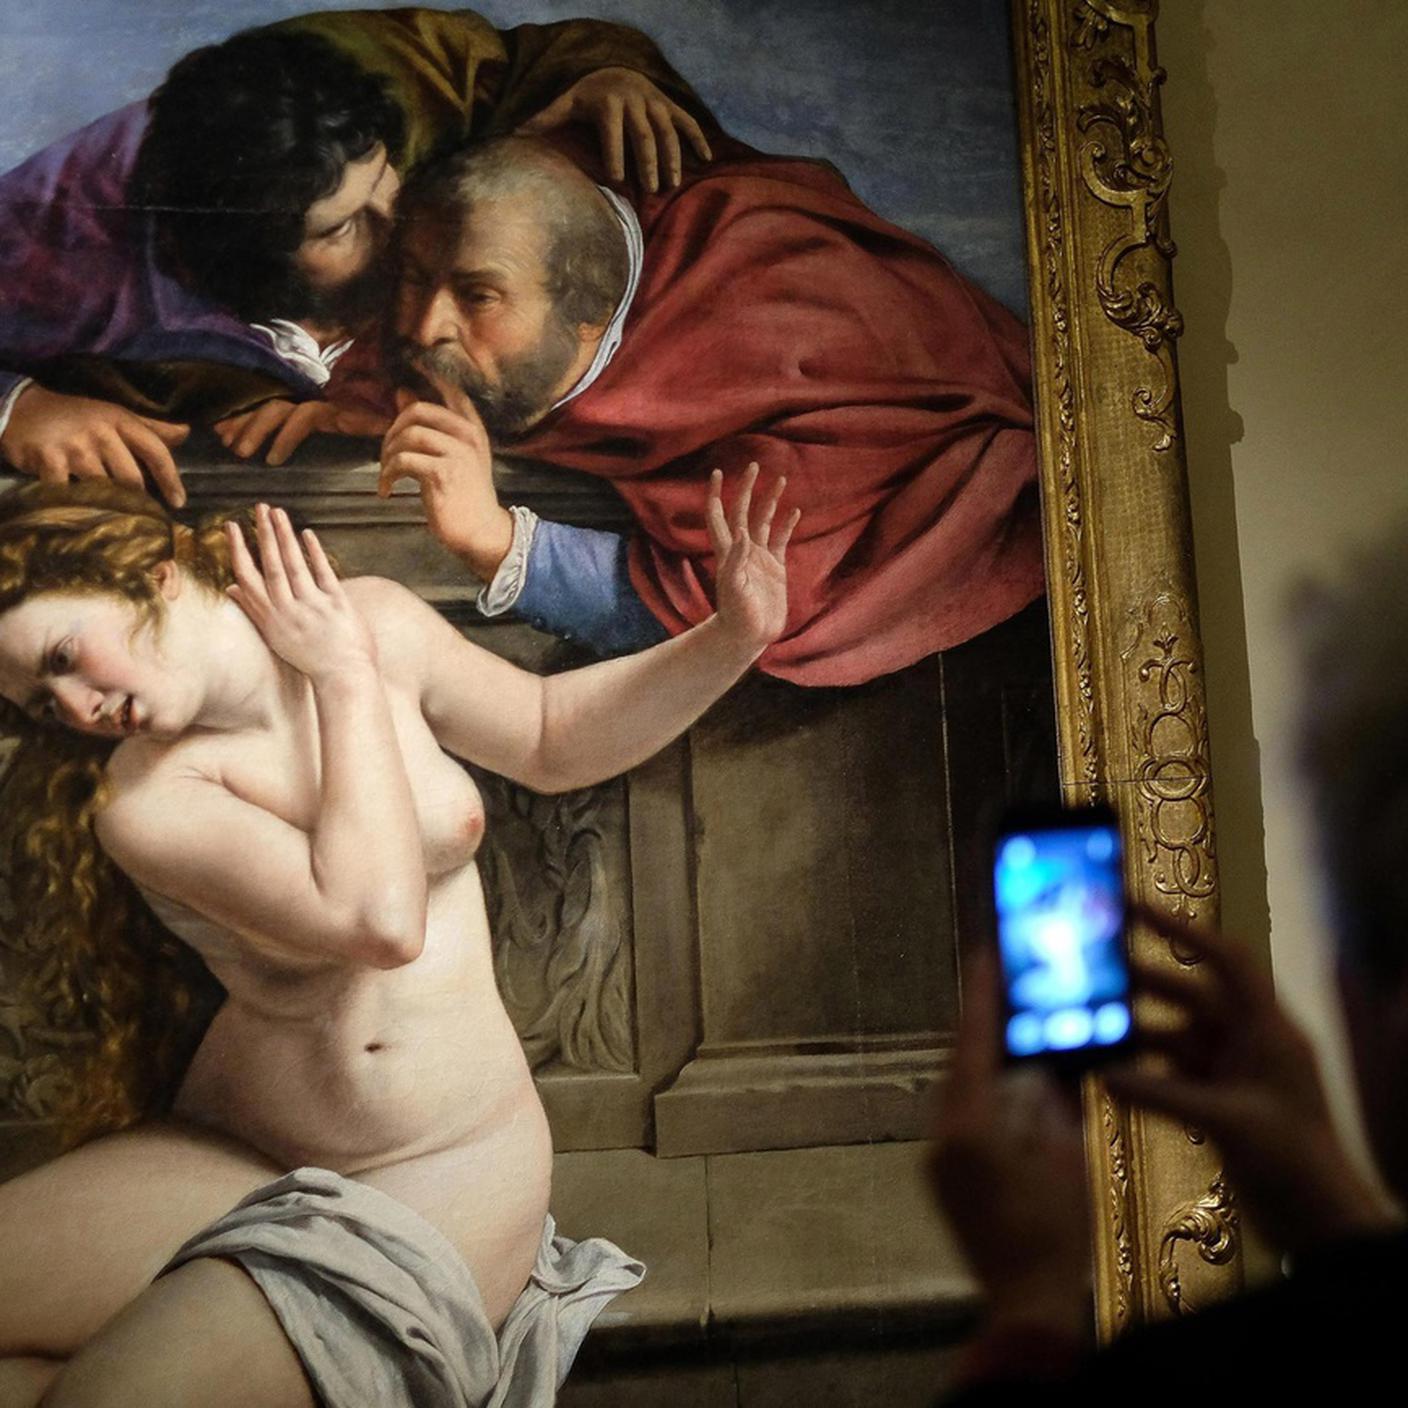 Un visitatore scatta una foto con il cellulare del dipinto "Susanna e i vecchi" dell'artista barocca italiana Artemisia Gentileschi